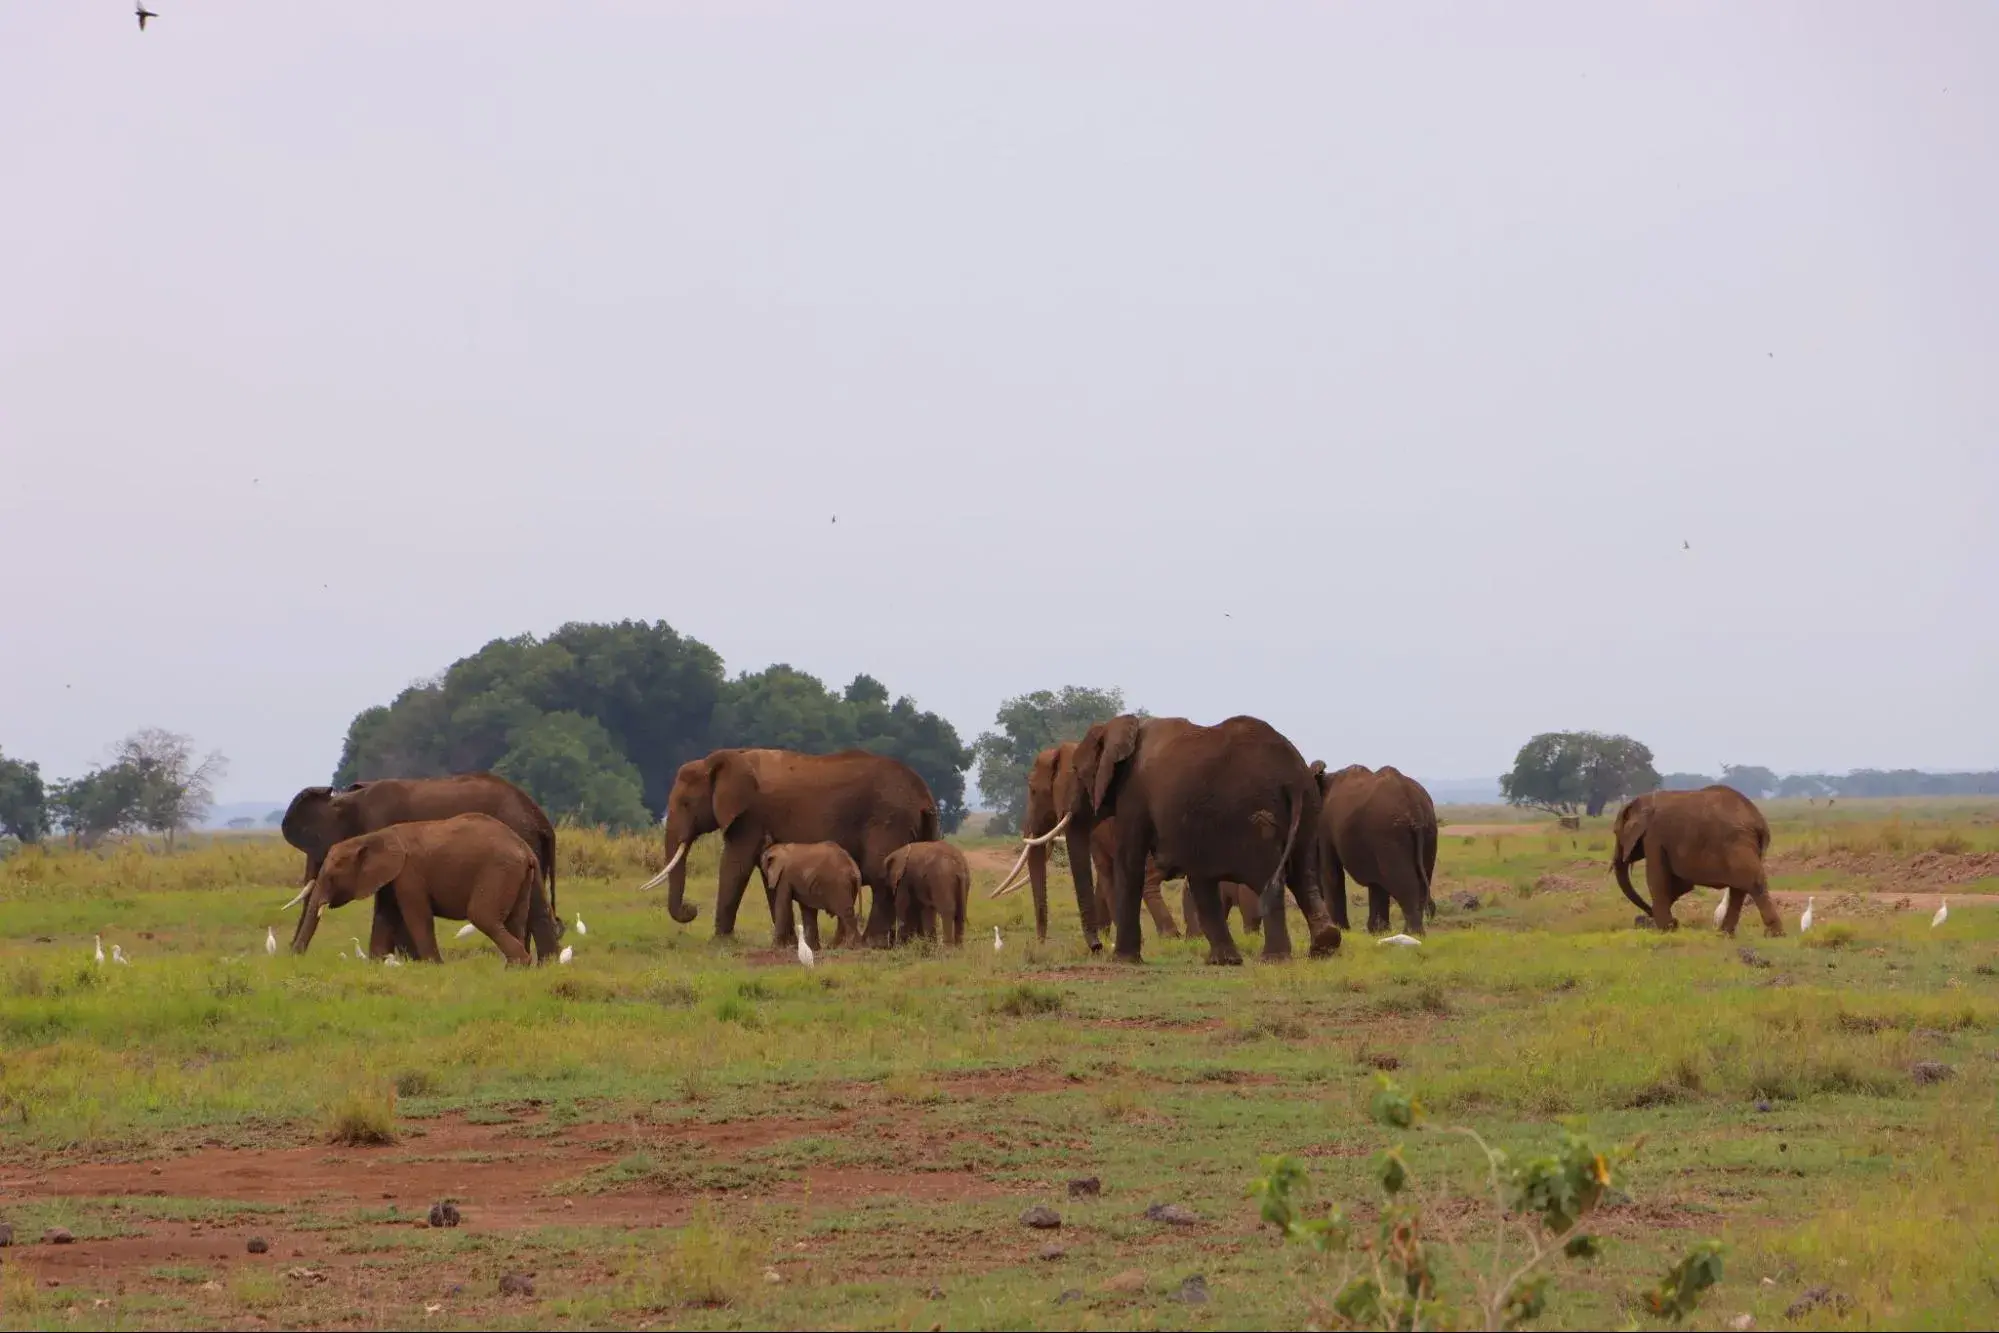 KenyaLuxurySafari.co.uk - Elephants in Amboseli